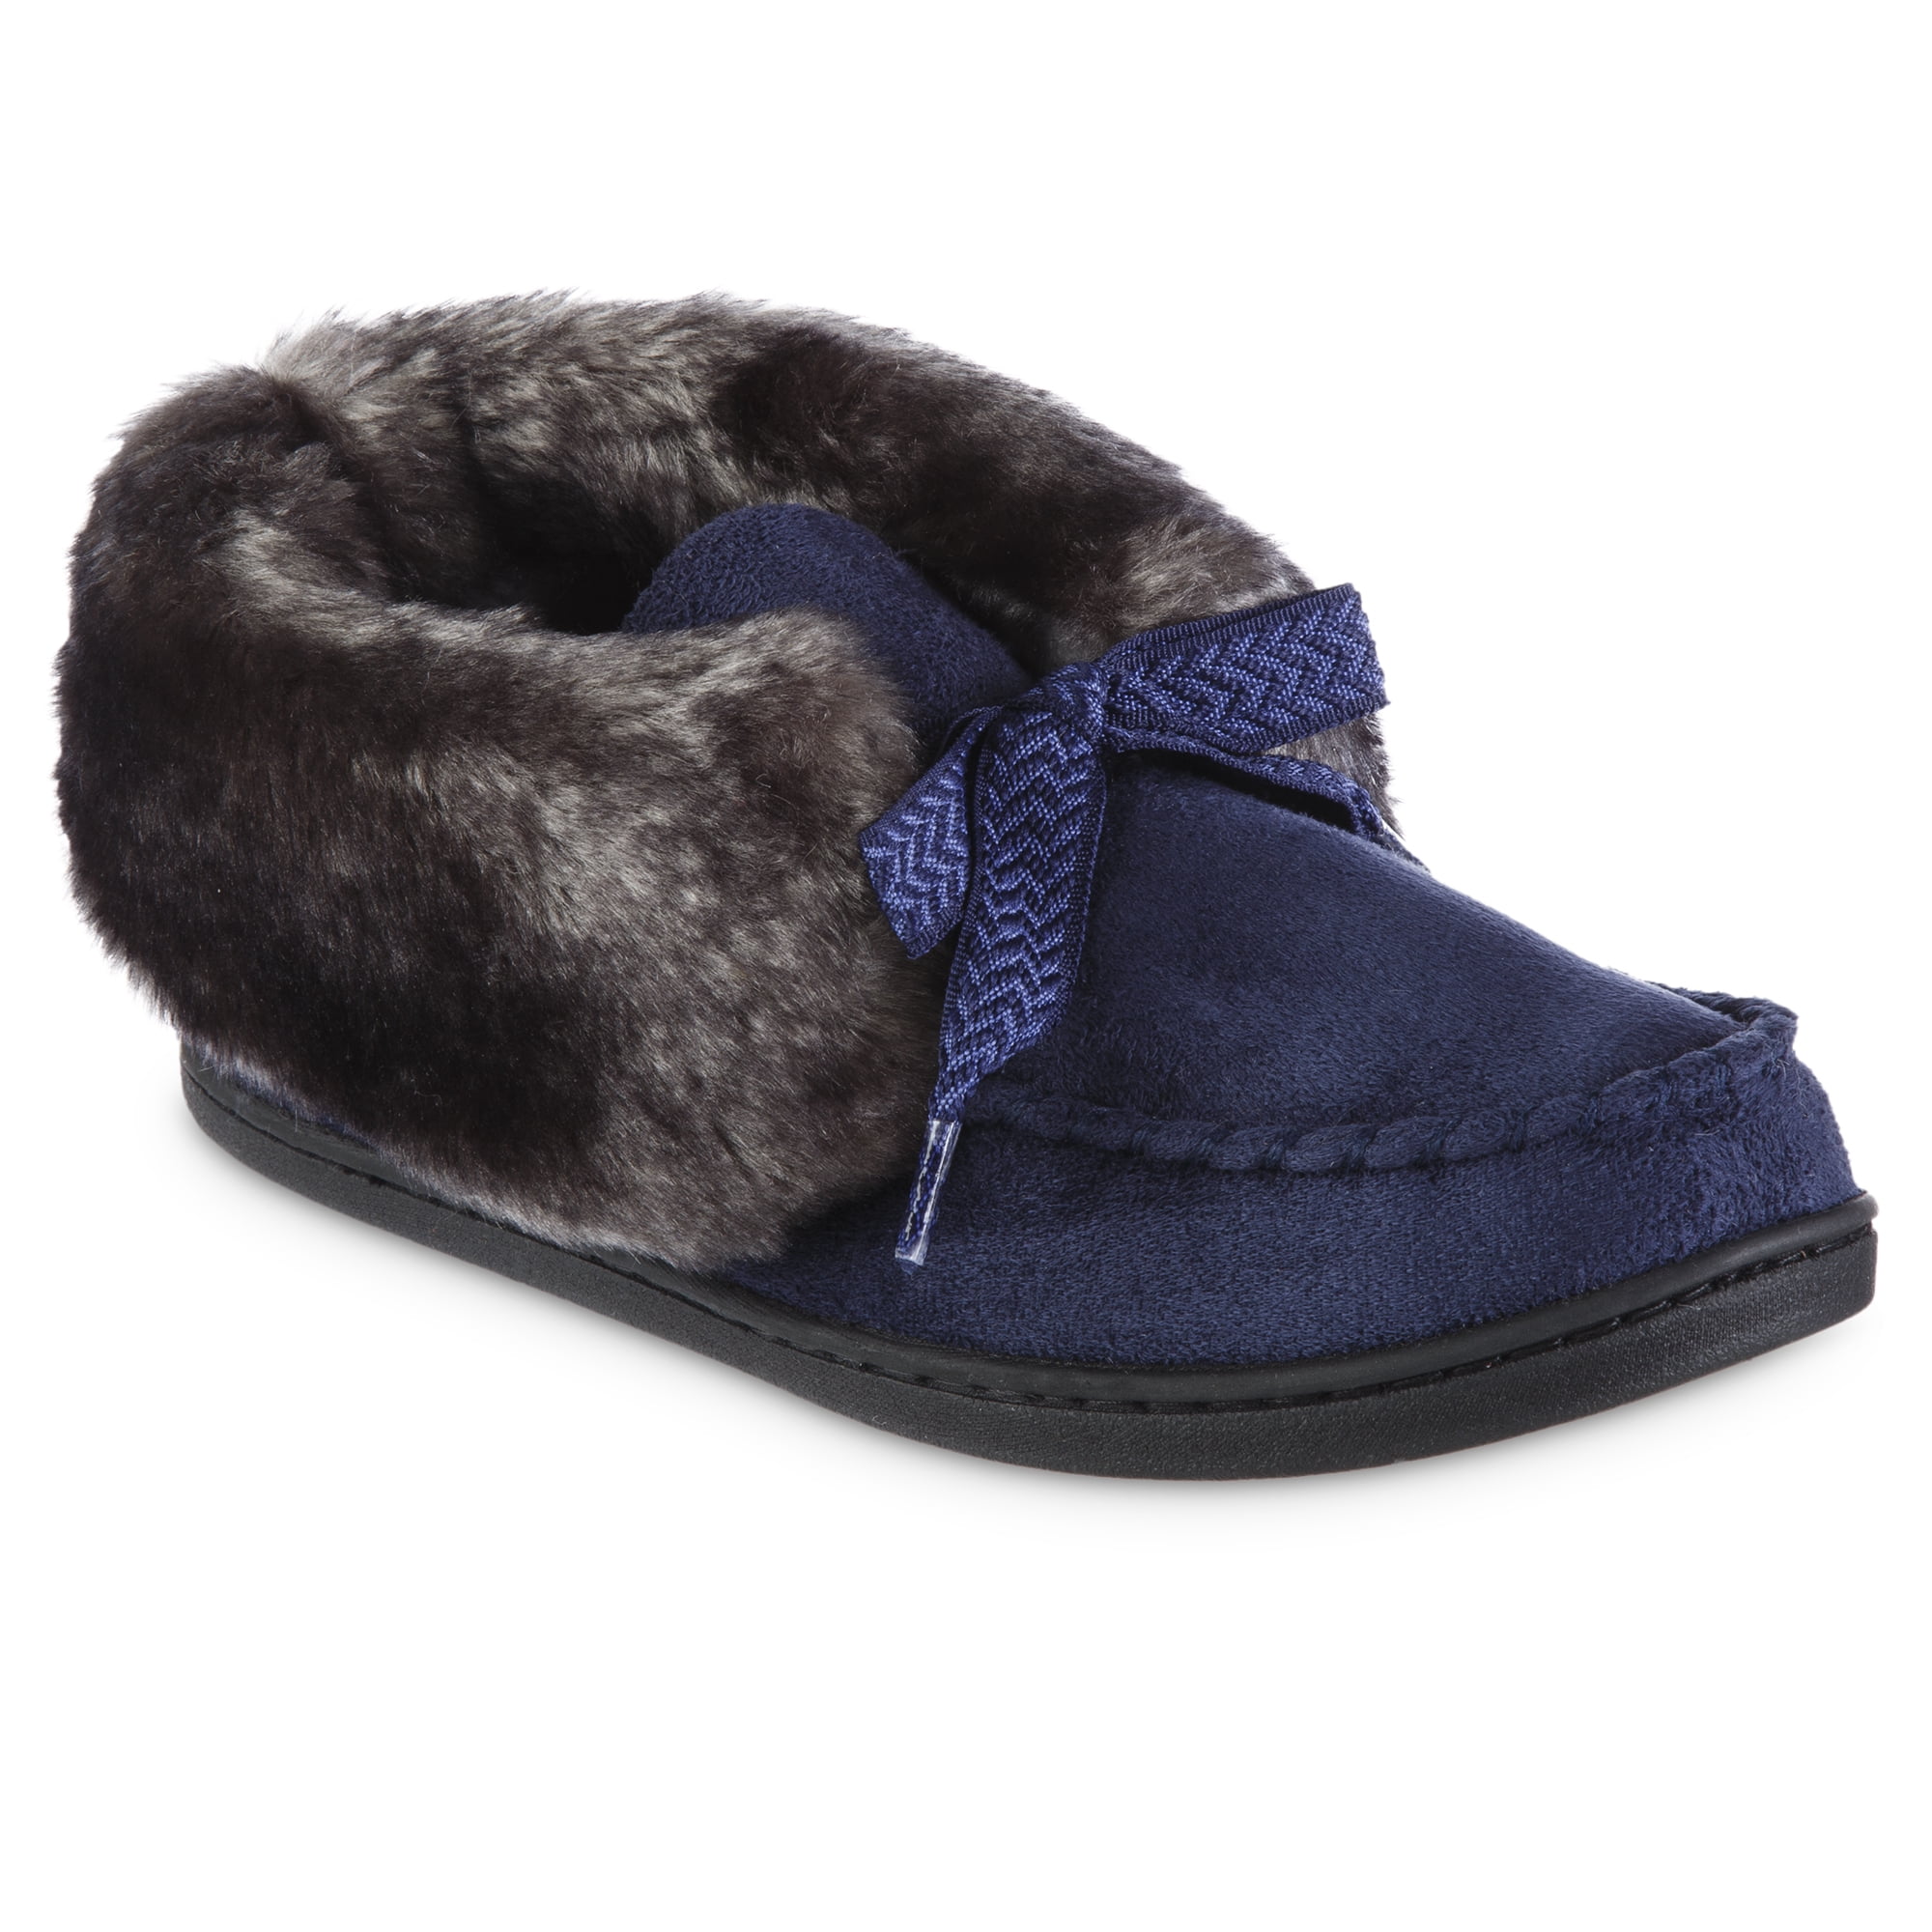 Buy Beige Flip Flop & Slippers for Women by Carlton London Sports Online |  Ajio.com